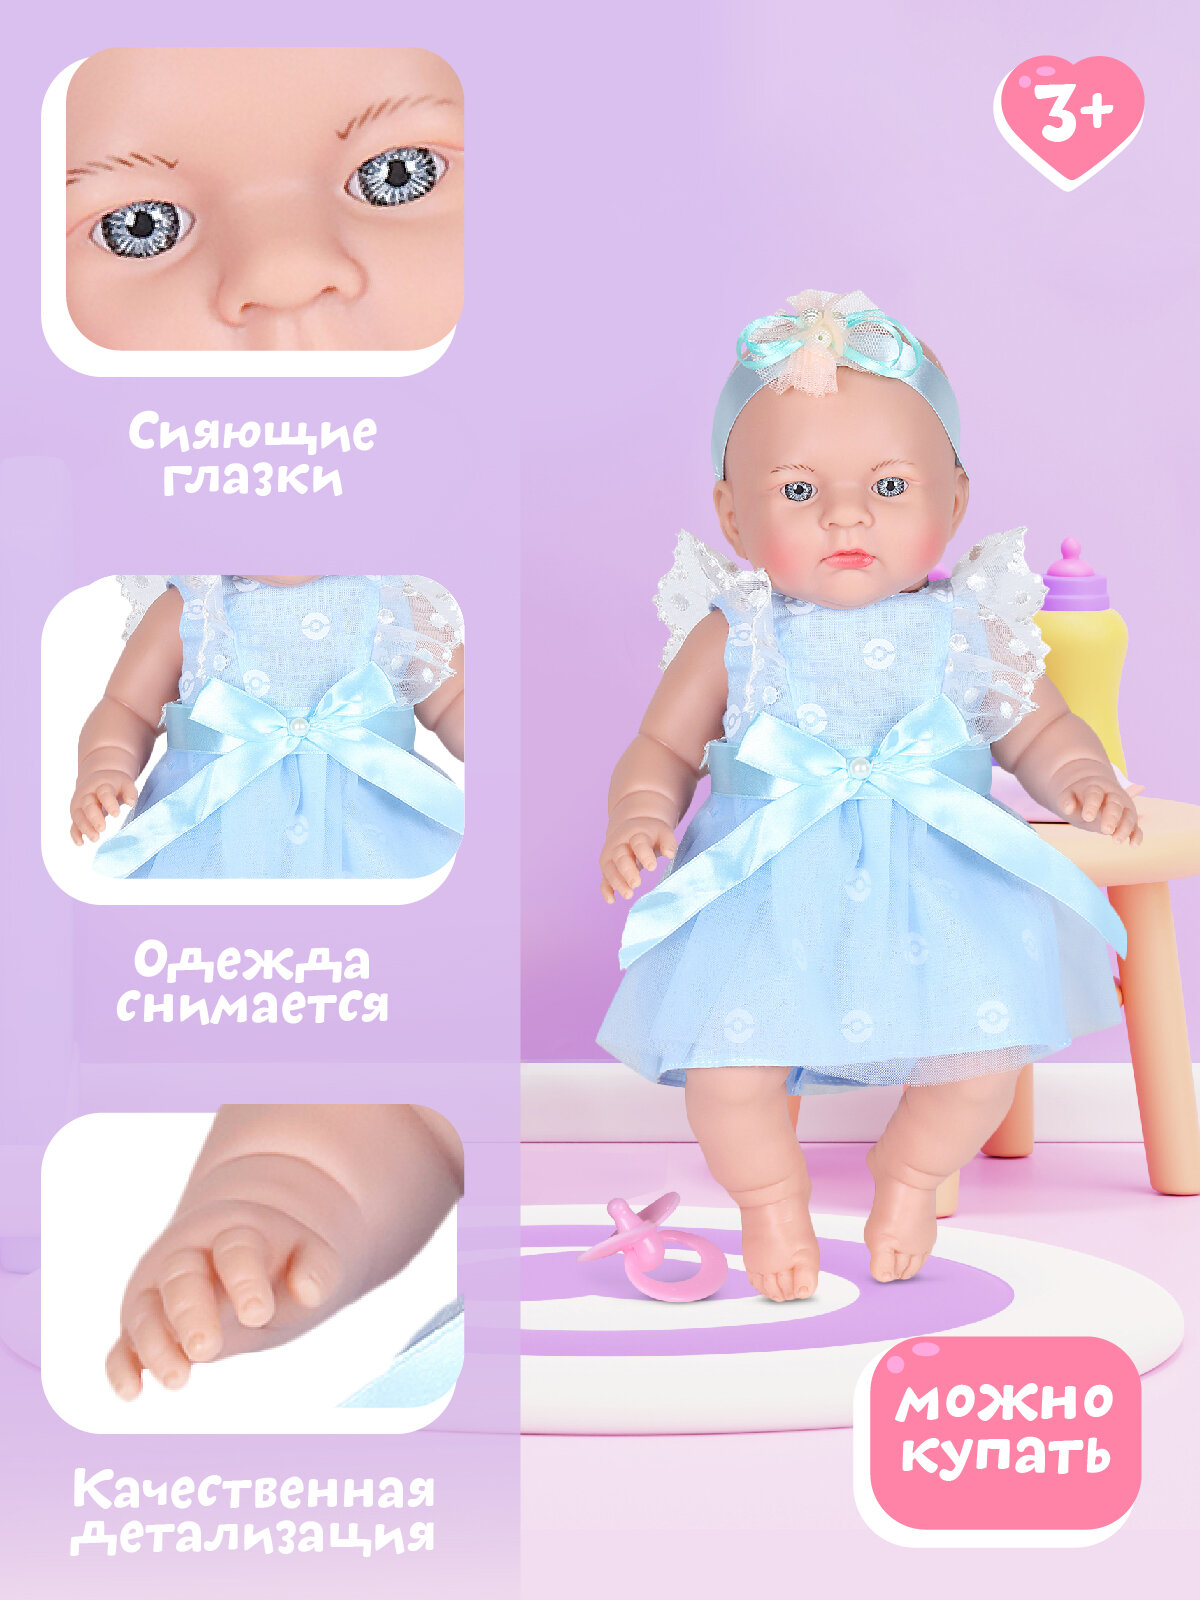 Кукла для девочек, Пупс 36 см серия "Очарование" ТМ "Amore Bello", подарок, для игры в дочки-матери, для детей, для девочек, цвет нежно-голубой